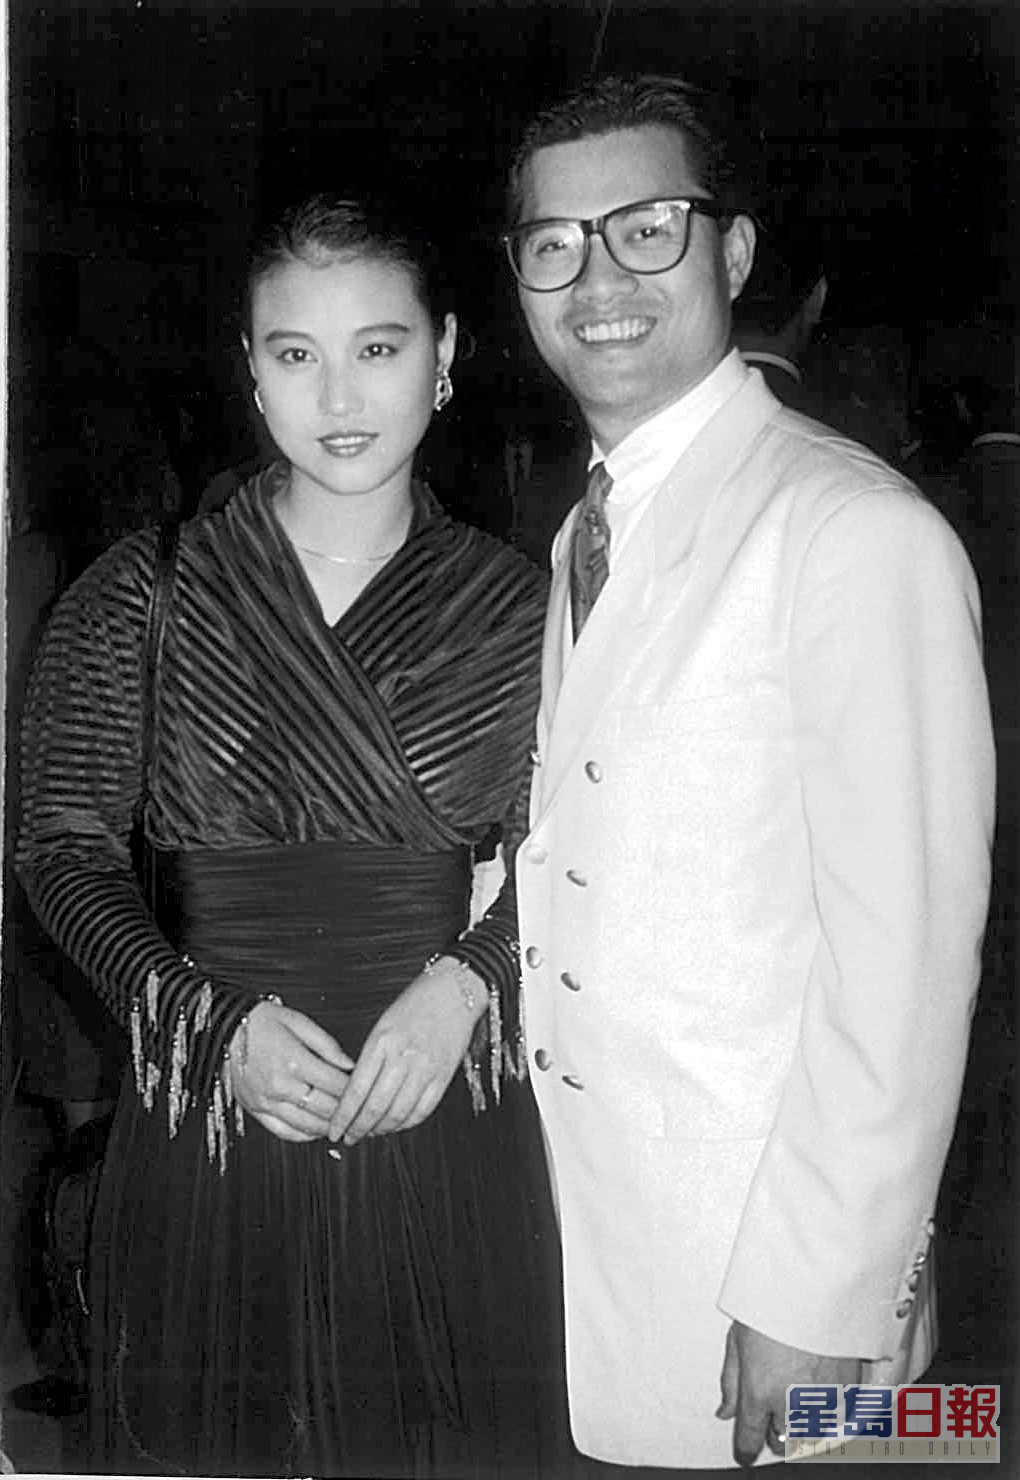 現年65歲的呂良偉於1988年與周海媚結婚。